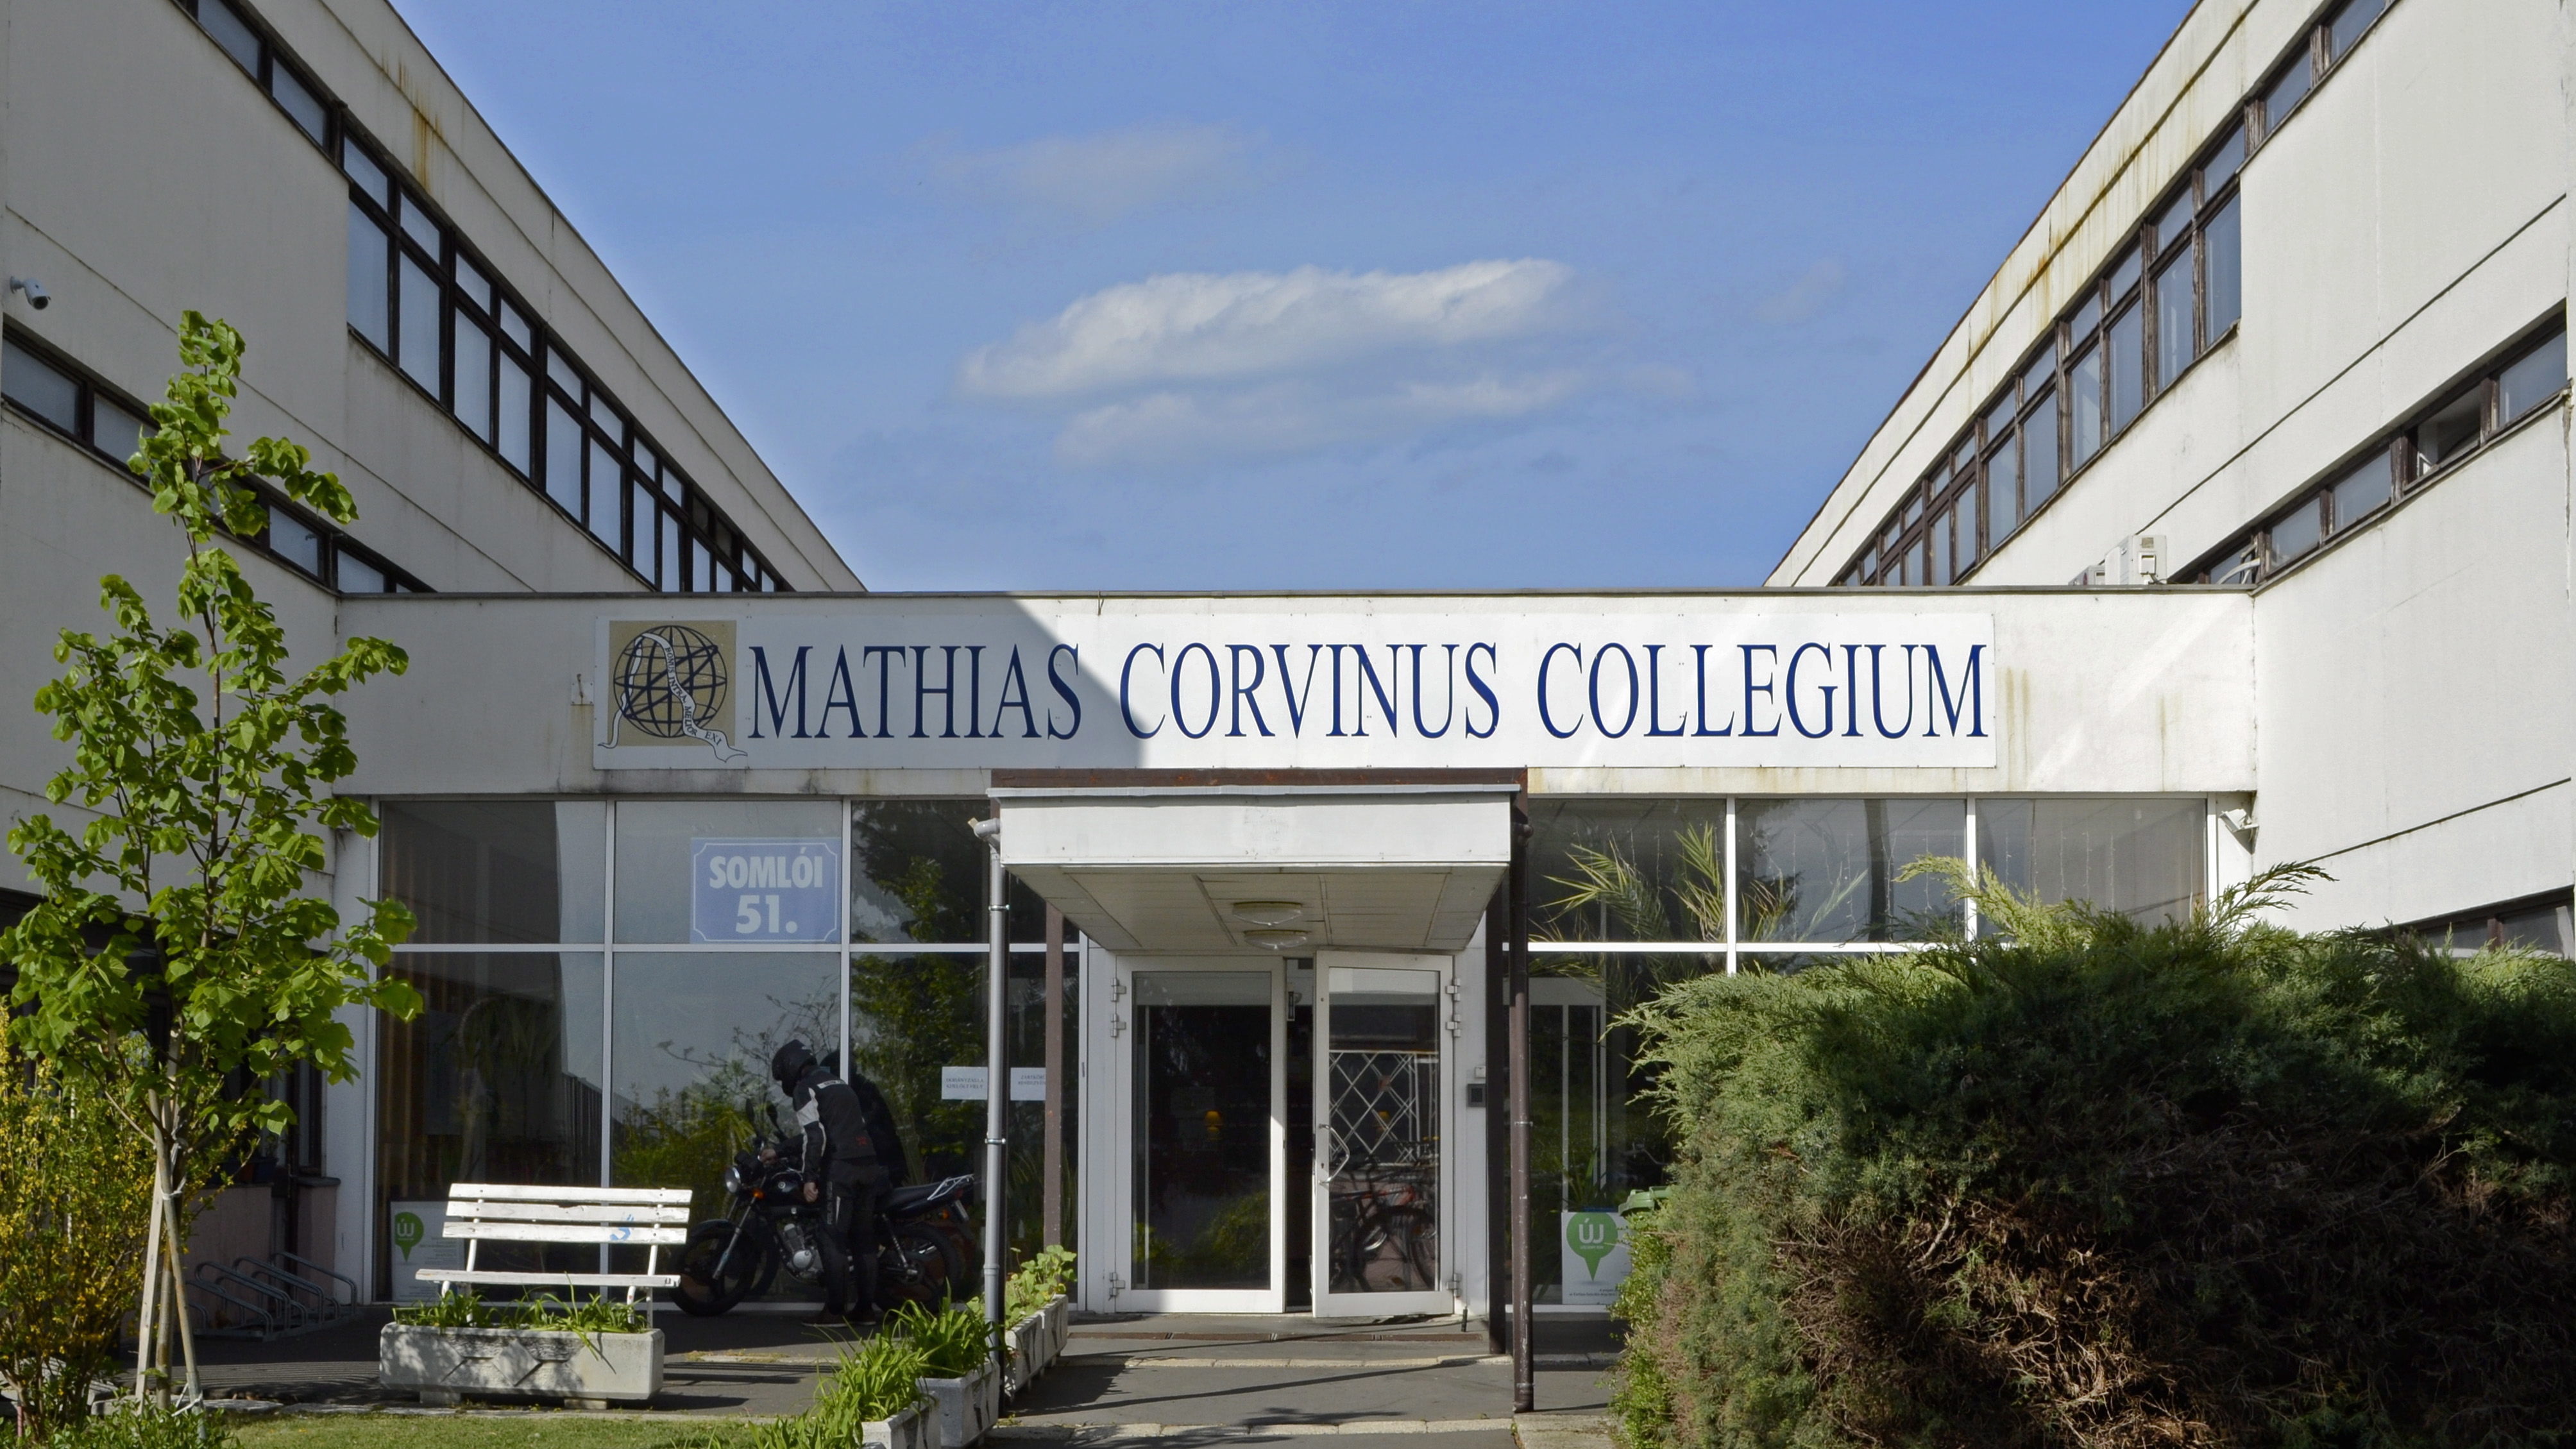 100 milliárd forintot kapott a Mathias Corvinus Collegium